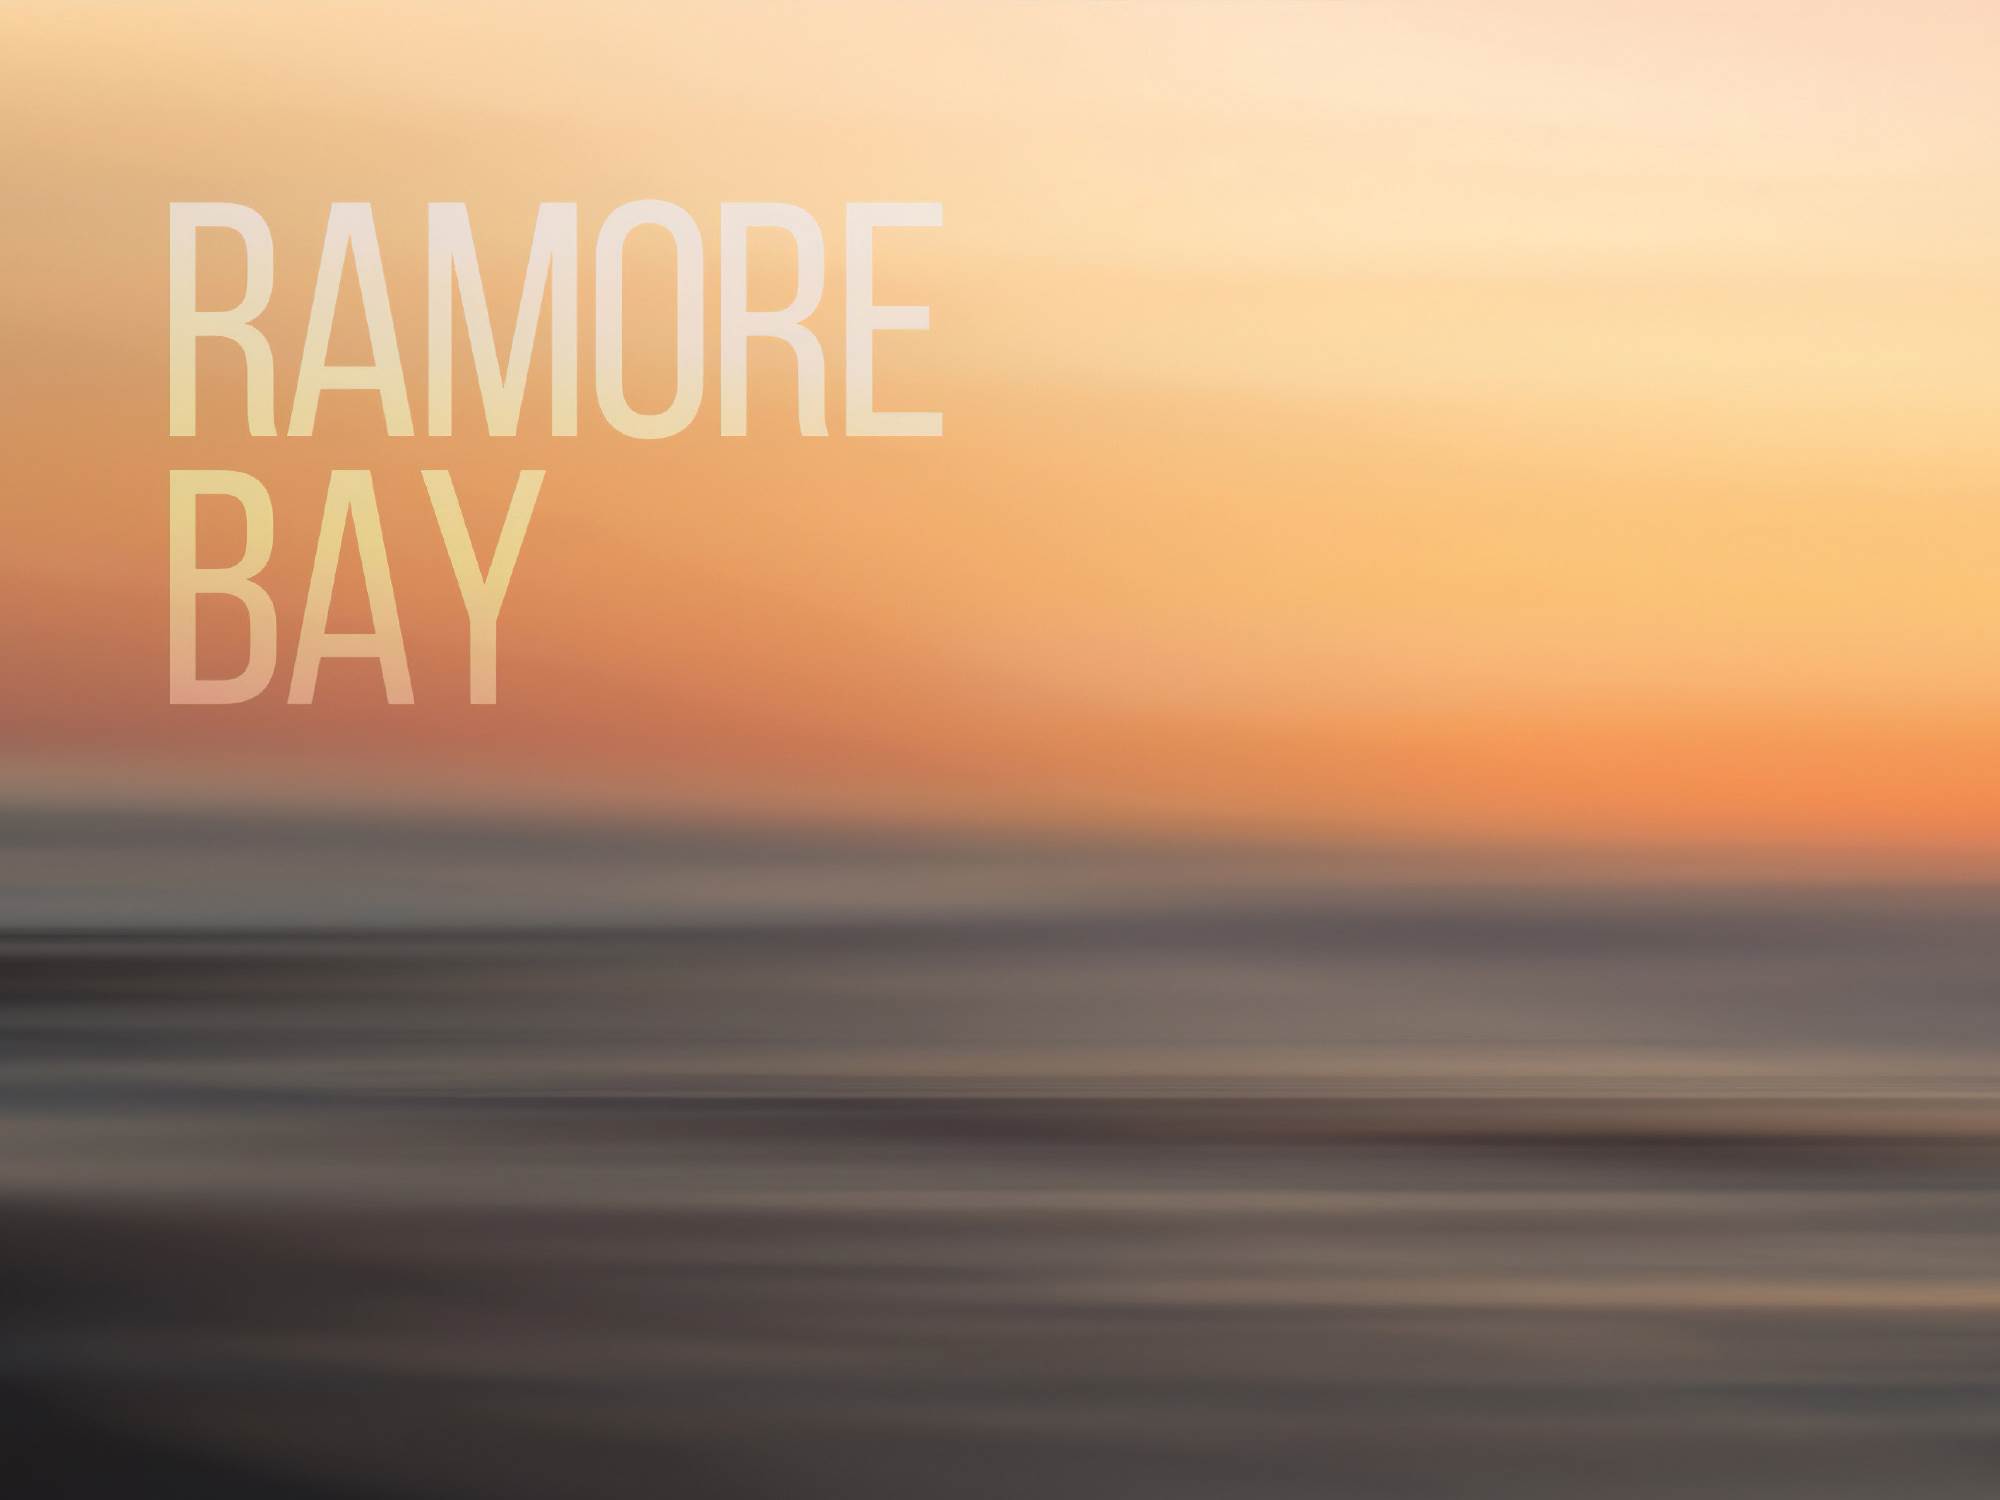 7 Ramore Bay